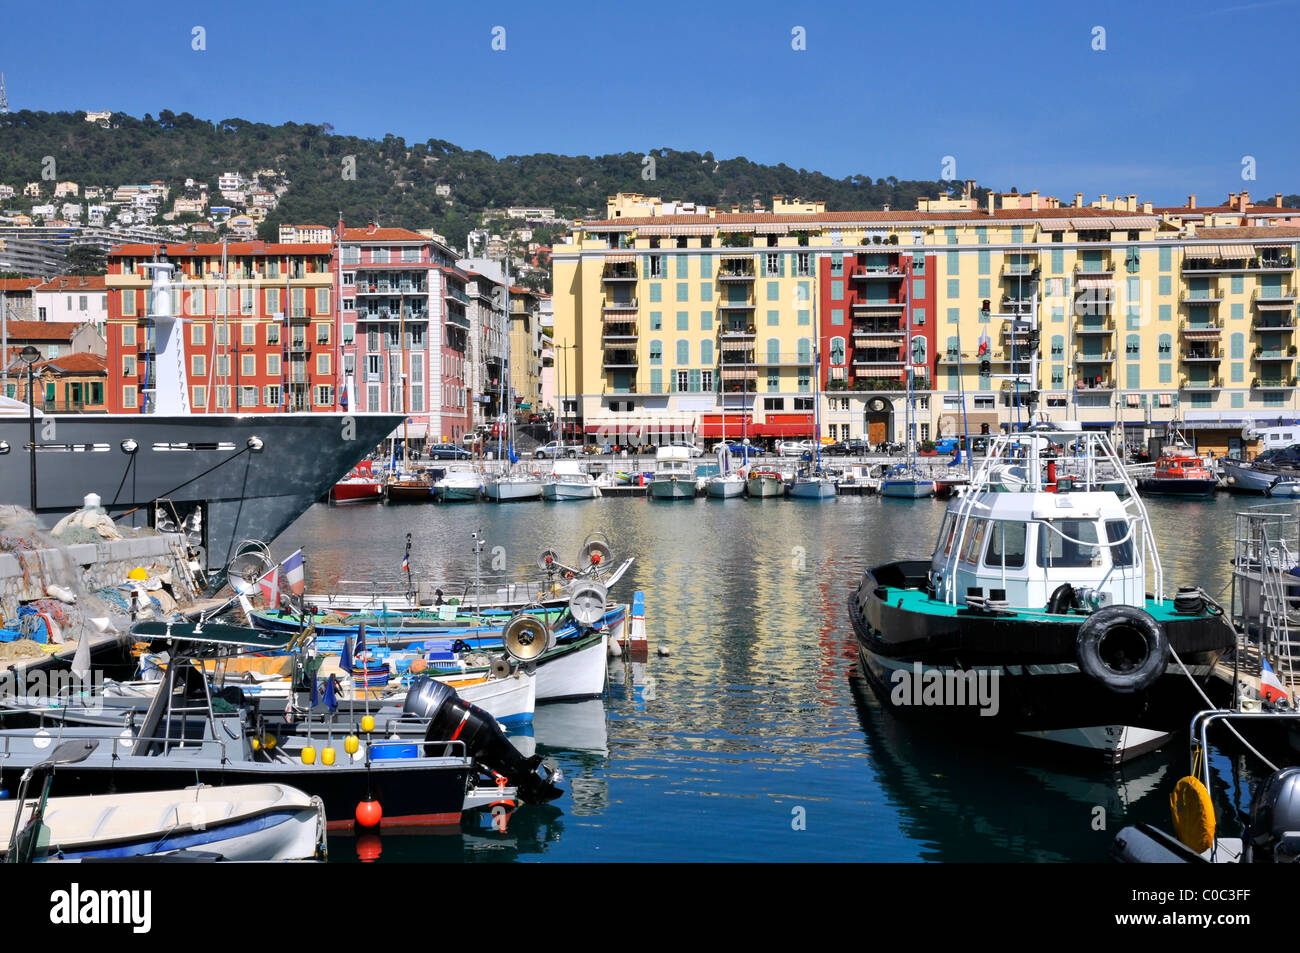 Hafen von Nizza im Südosten Frankreichs, Departement Alpes-Maritimes, mit den typischen bunten Gebäuden im Hintergrund Stockfoto